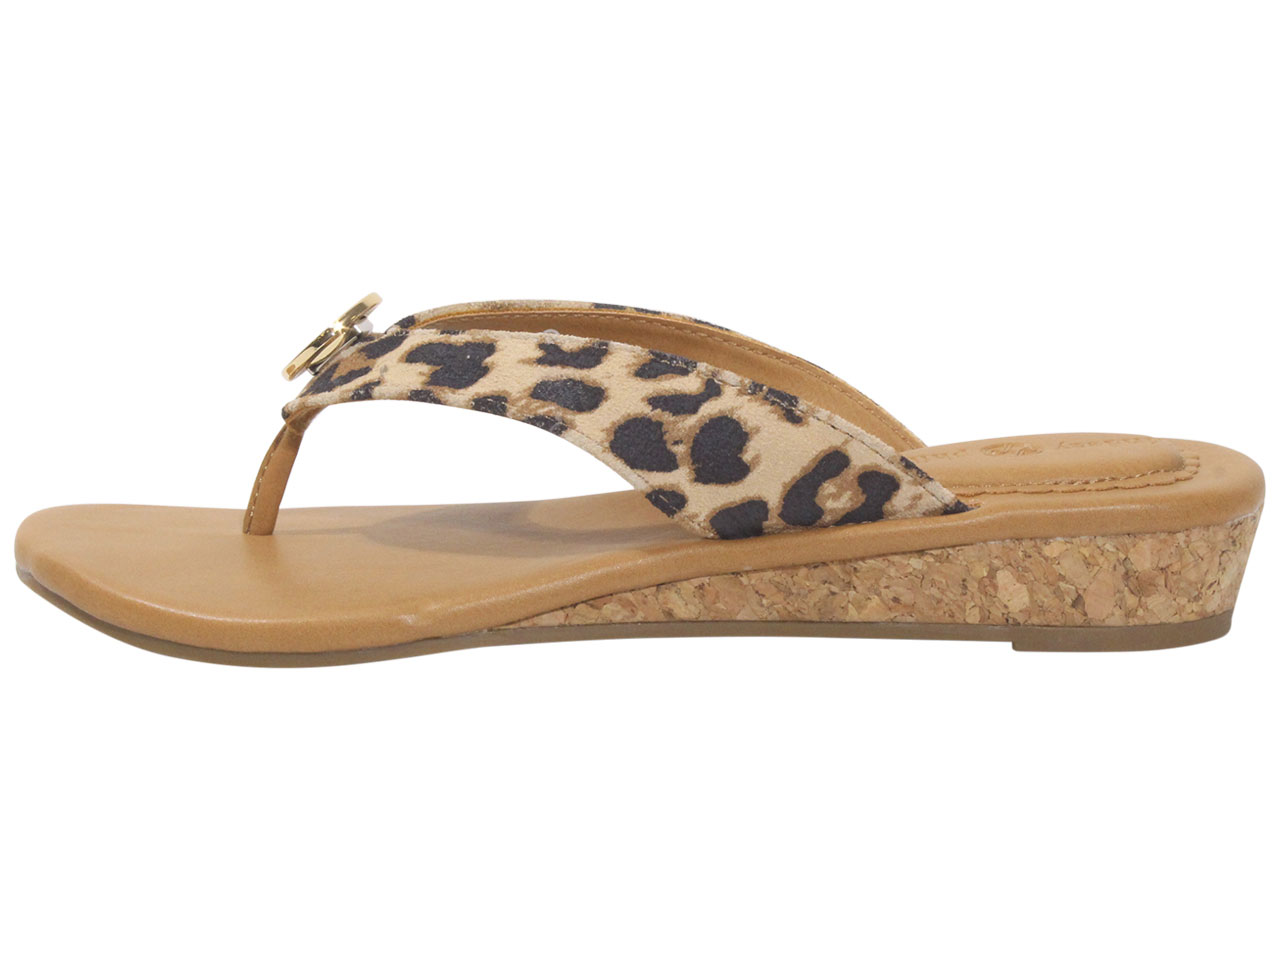 Lindsay Phillips Women's Guinevere Flip Flop Sandals Leopard Sz. 7 ...